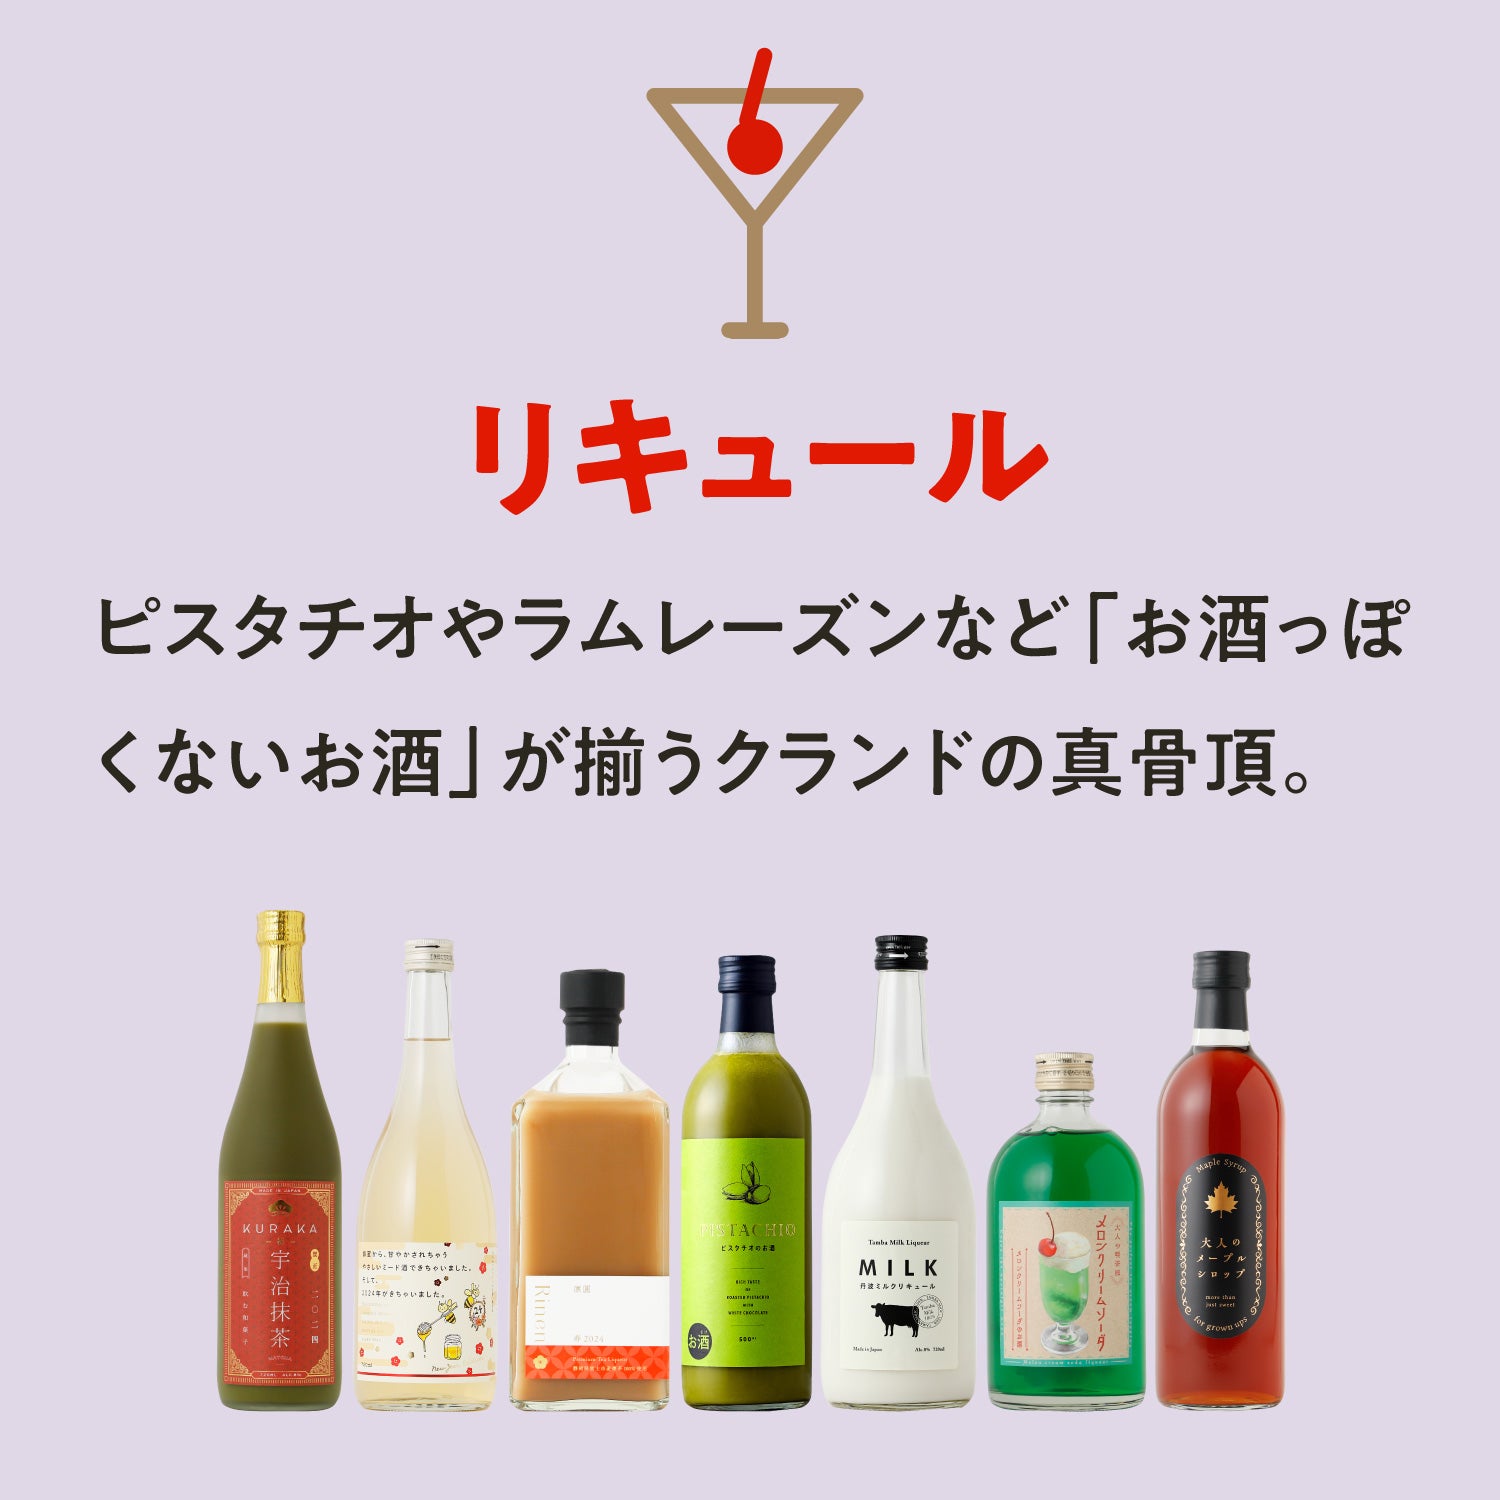 【6本】酒ガチャアウトレット -おまかせ-